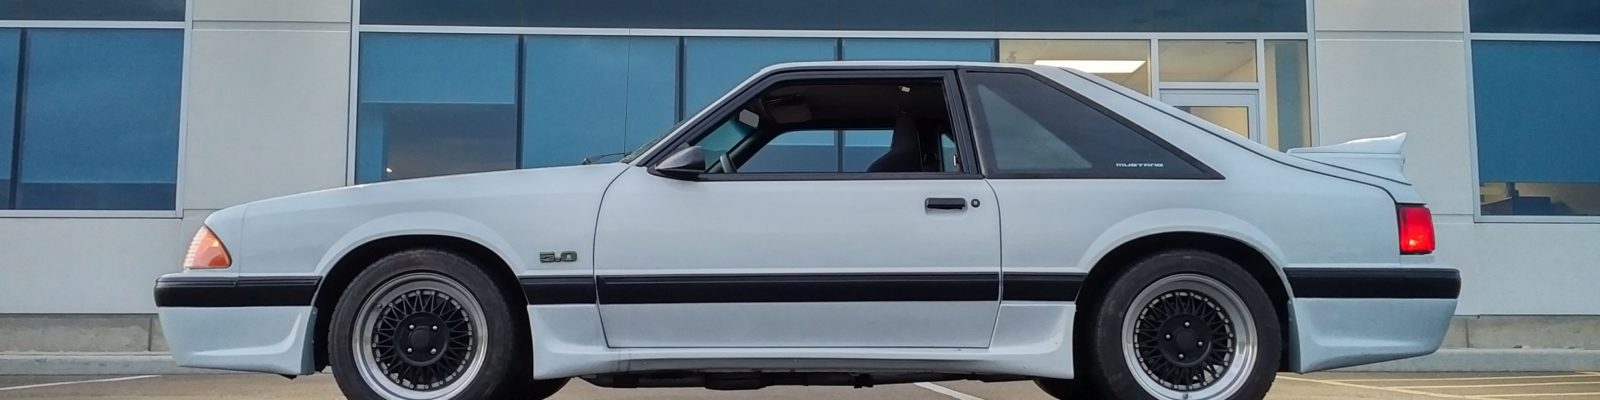 1988 Mustang DECH